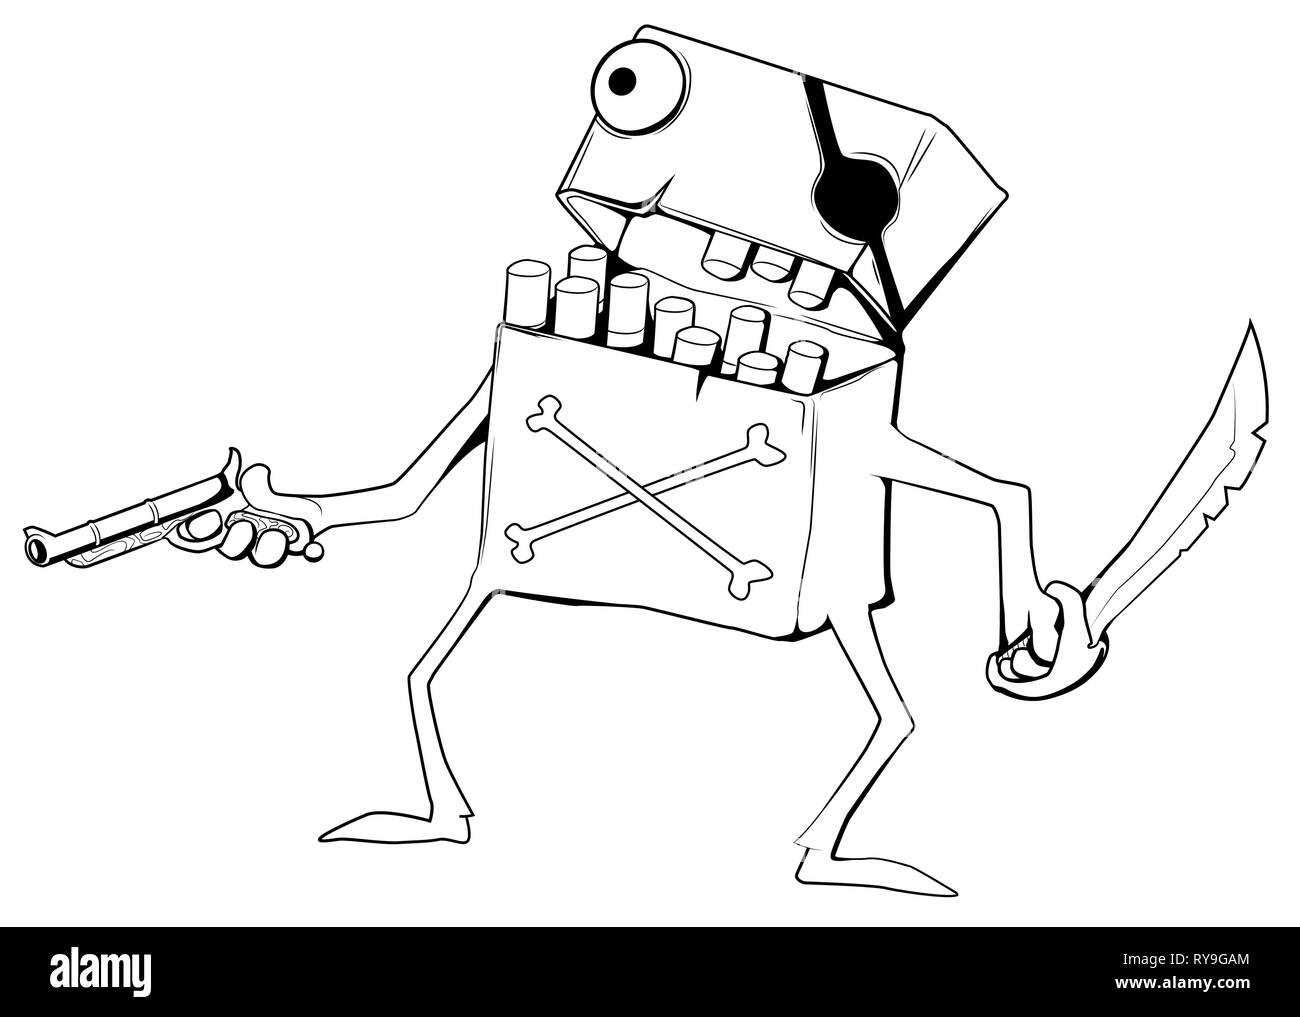 Caractère Pirate Cigarette, dessin animé, illustration vectorielle, horizontales sur fond blanc, isolé Illustration de Vecteur